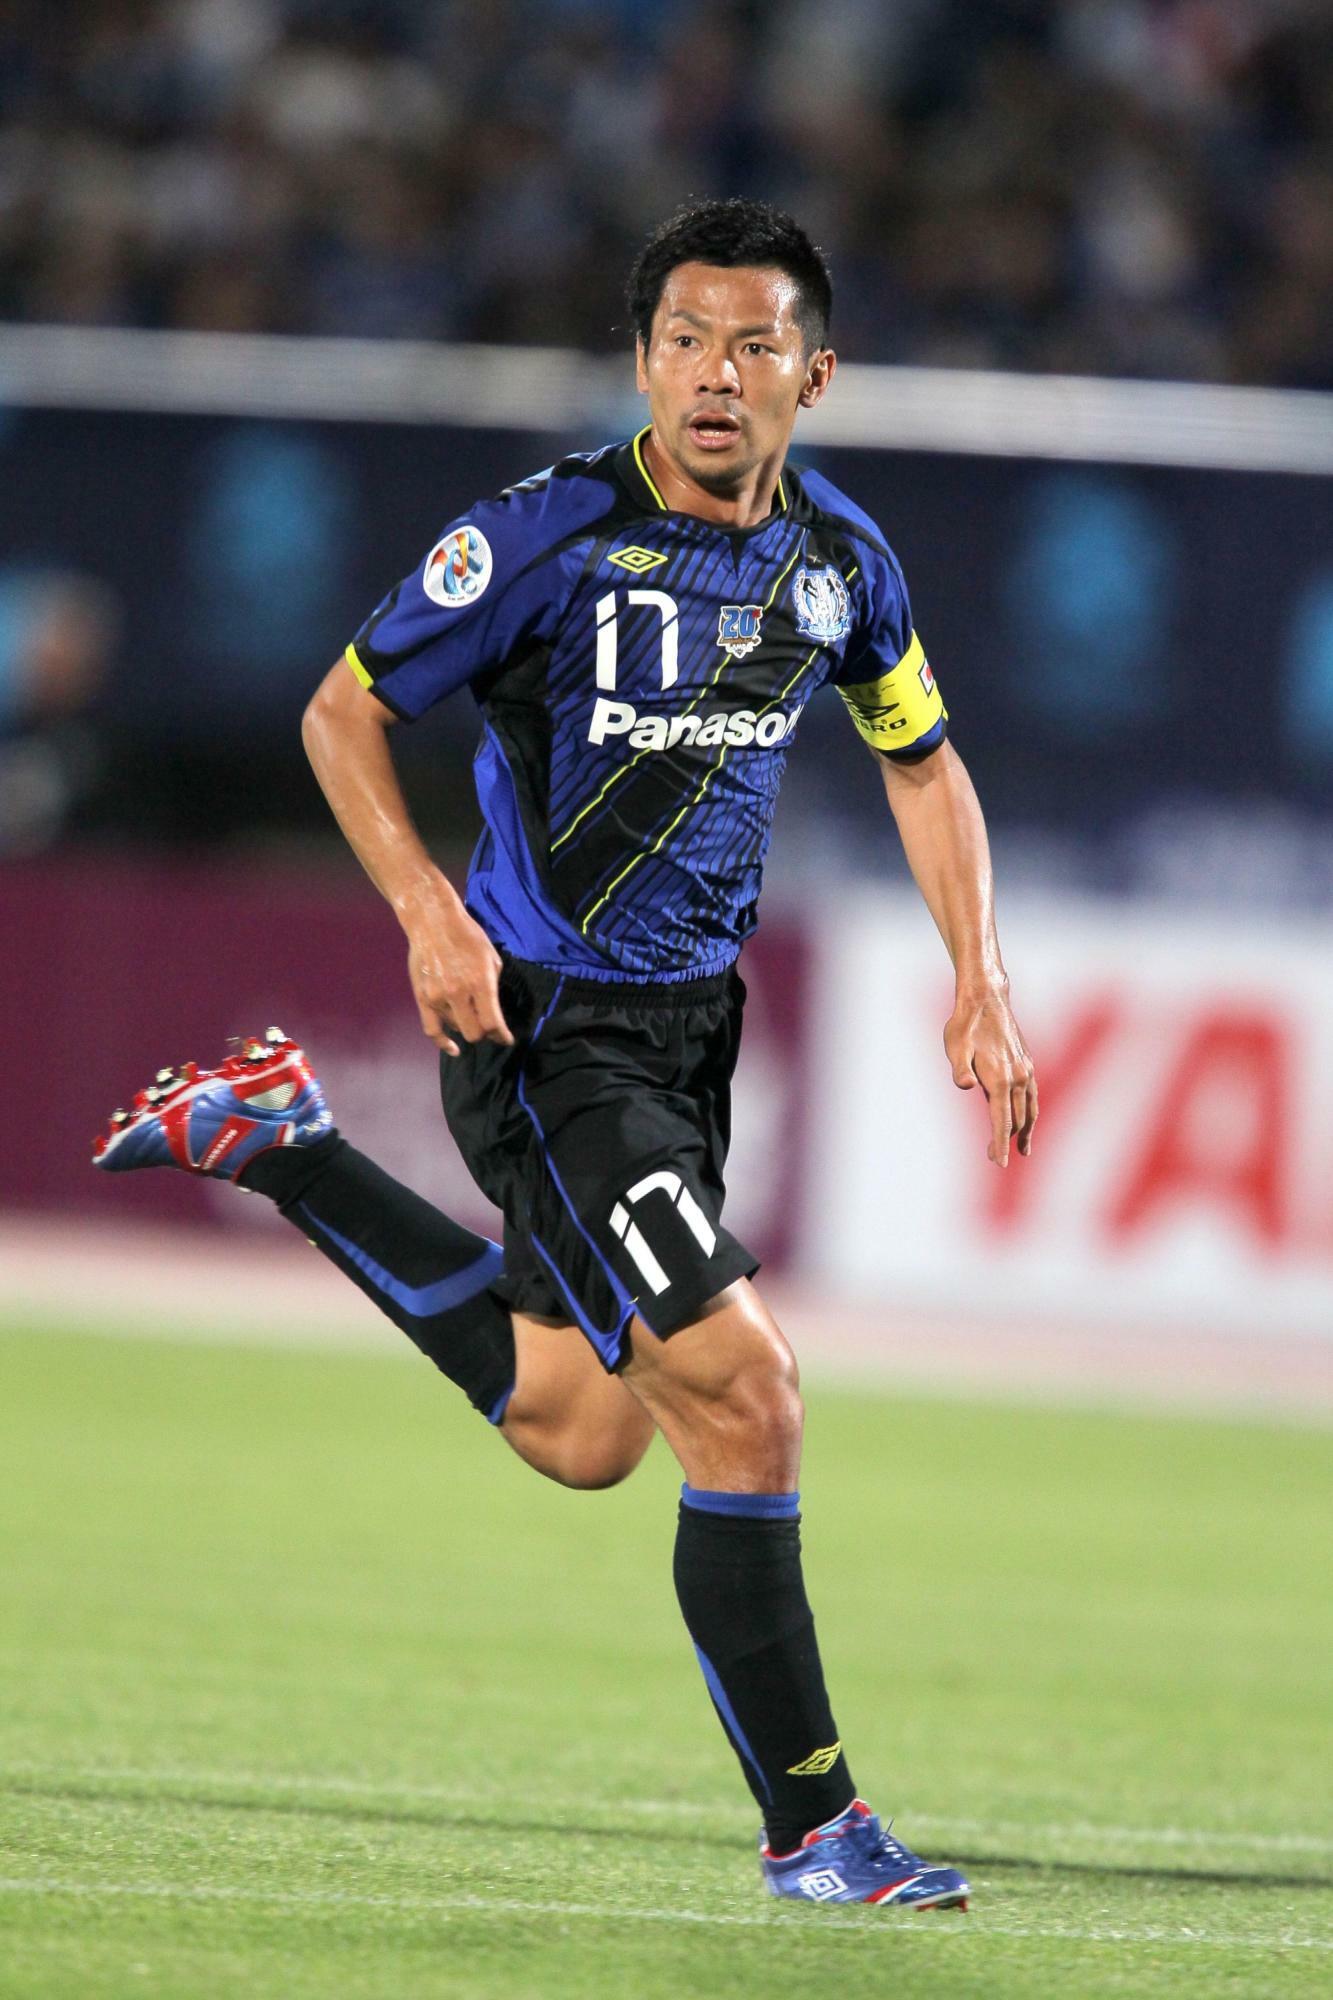 ガンバ大阪でキャプテンも務めた明神智和さん。献身的なプレーとプロ選手としての姿勢は藤春廣輝にも大きな影響を与えた